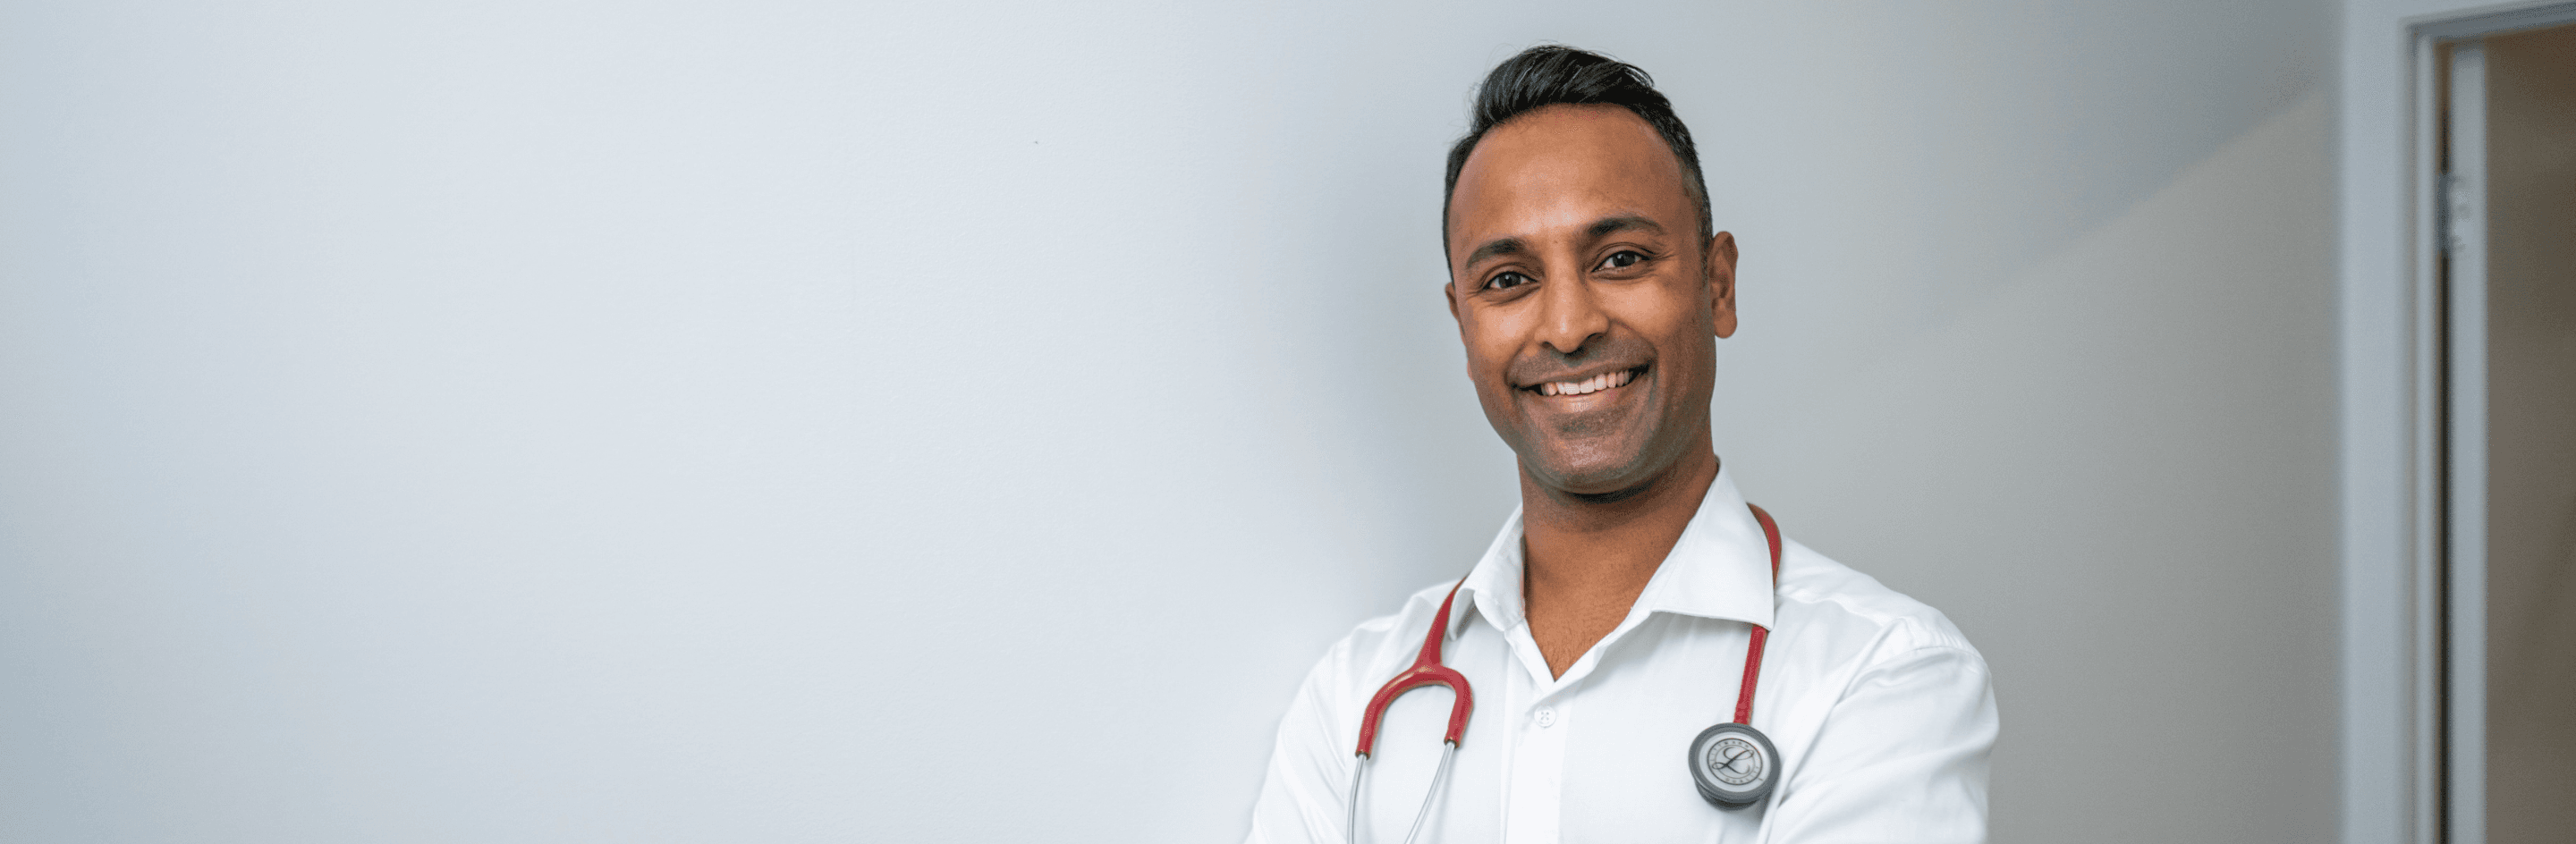 NZ registrar doctor 